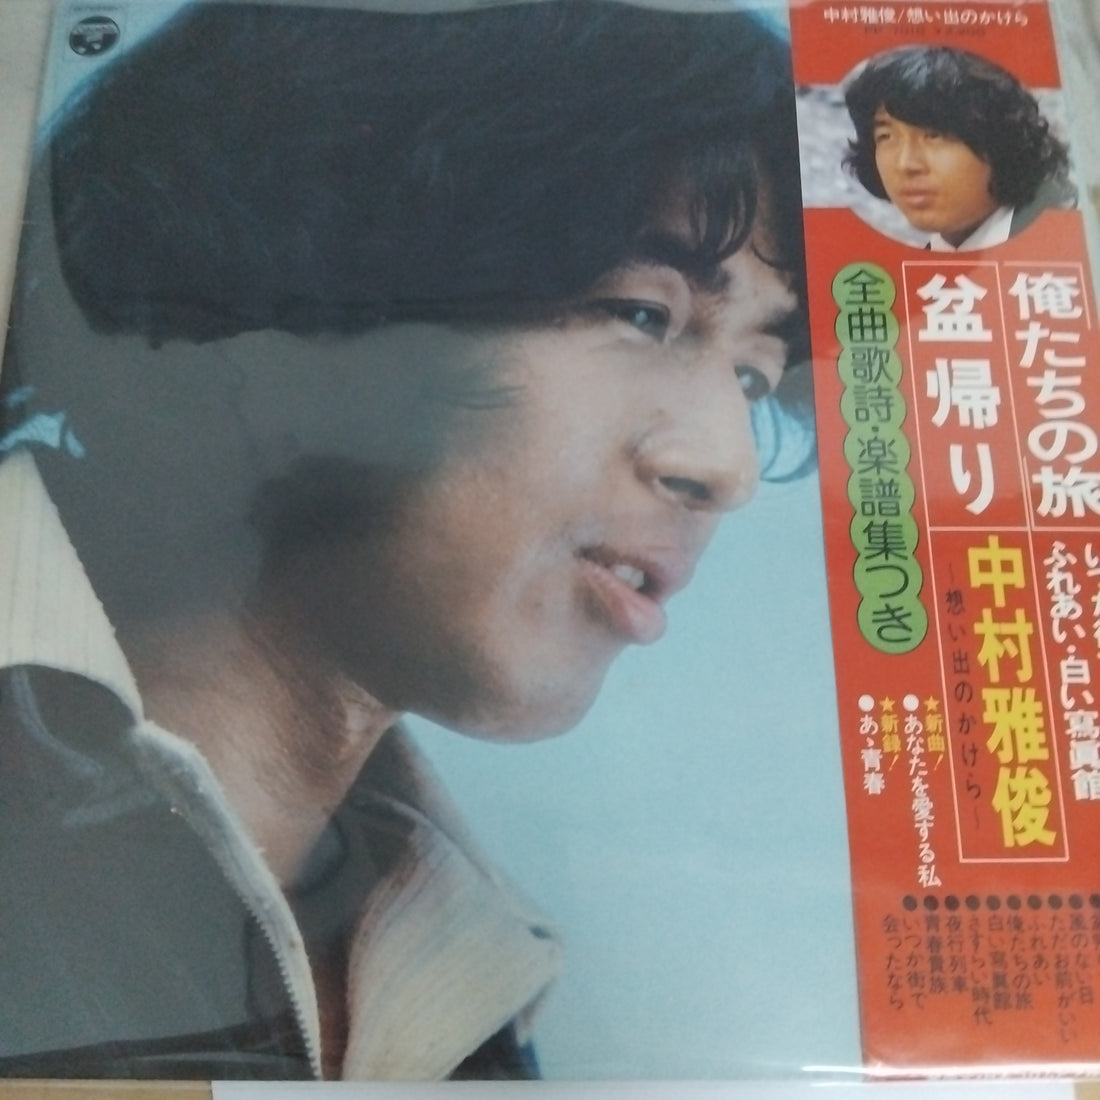 Nakamura Masatoshi - 想い出のかけら (Vinyl) (VG+)